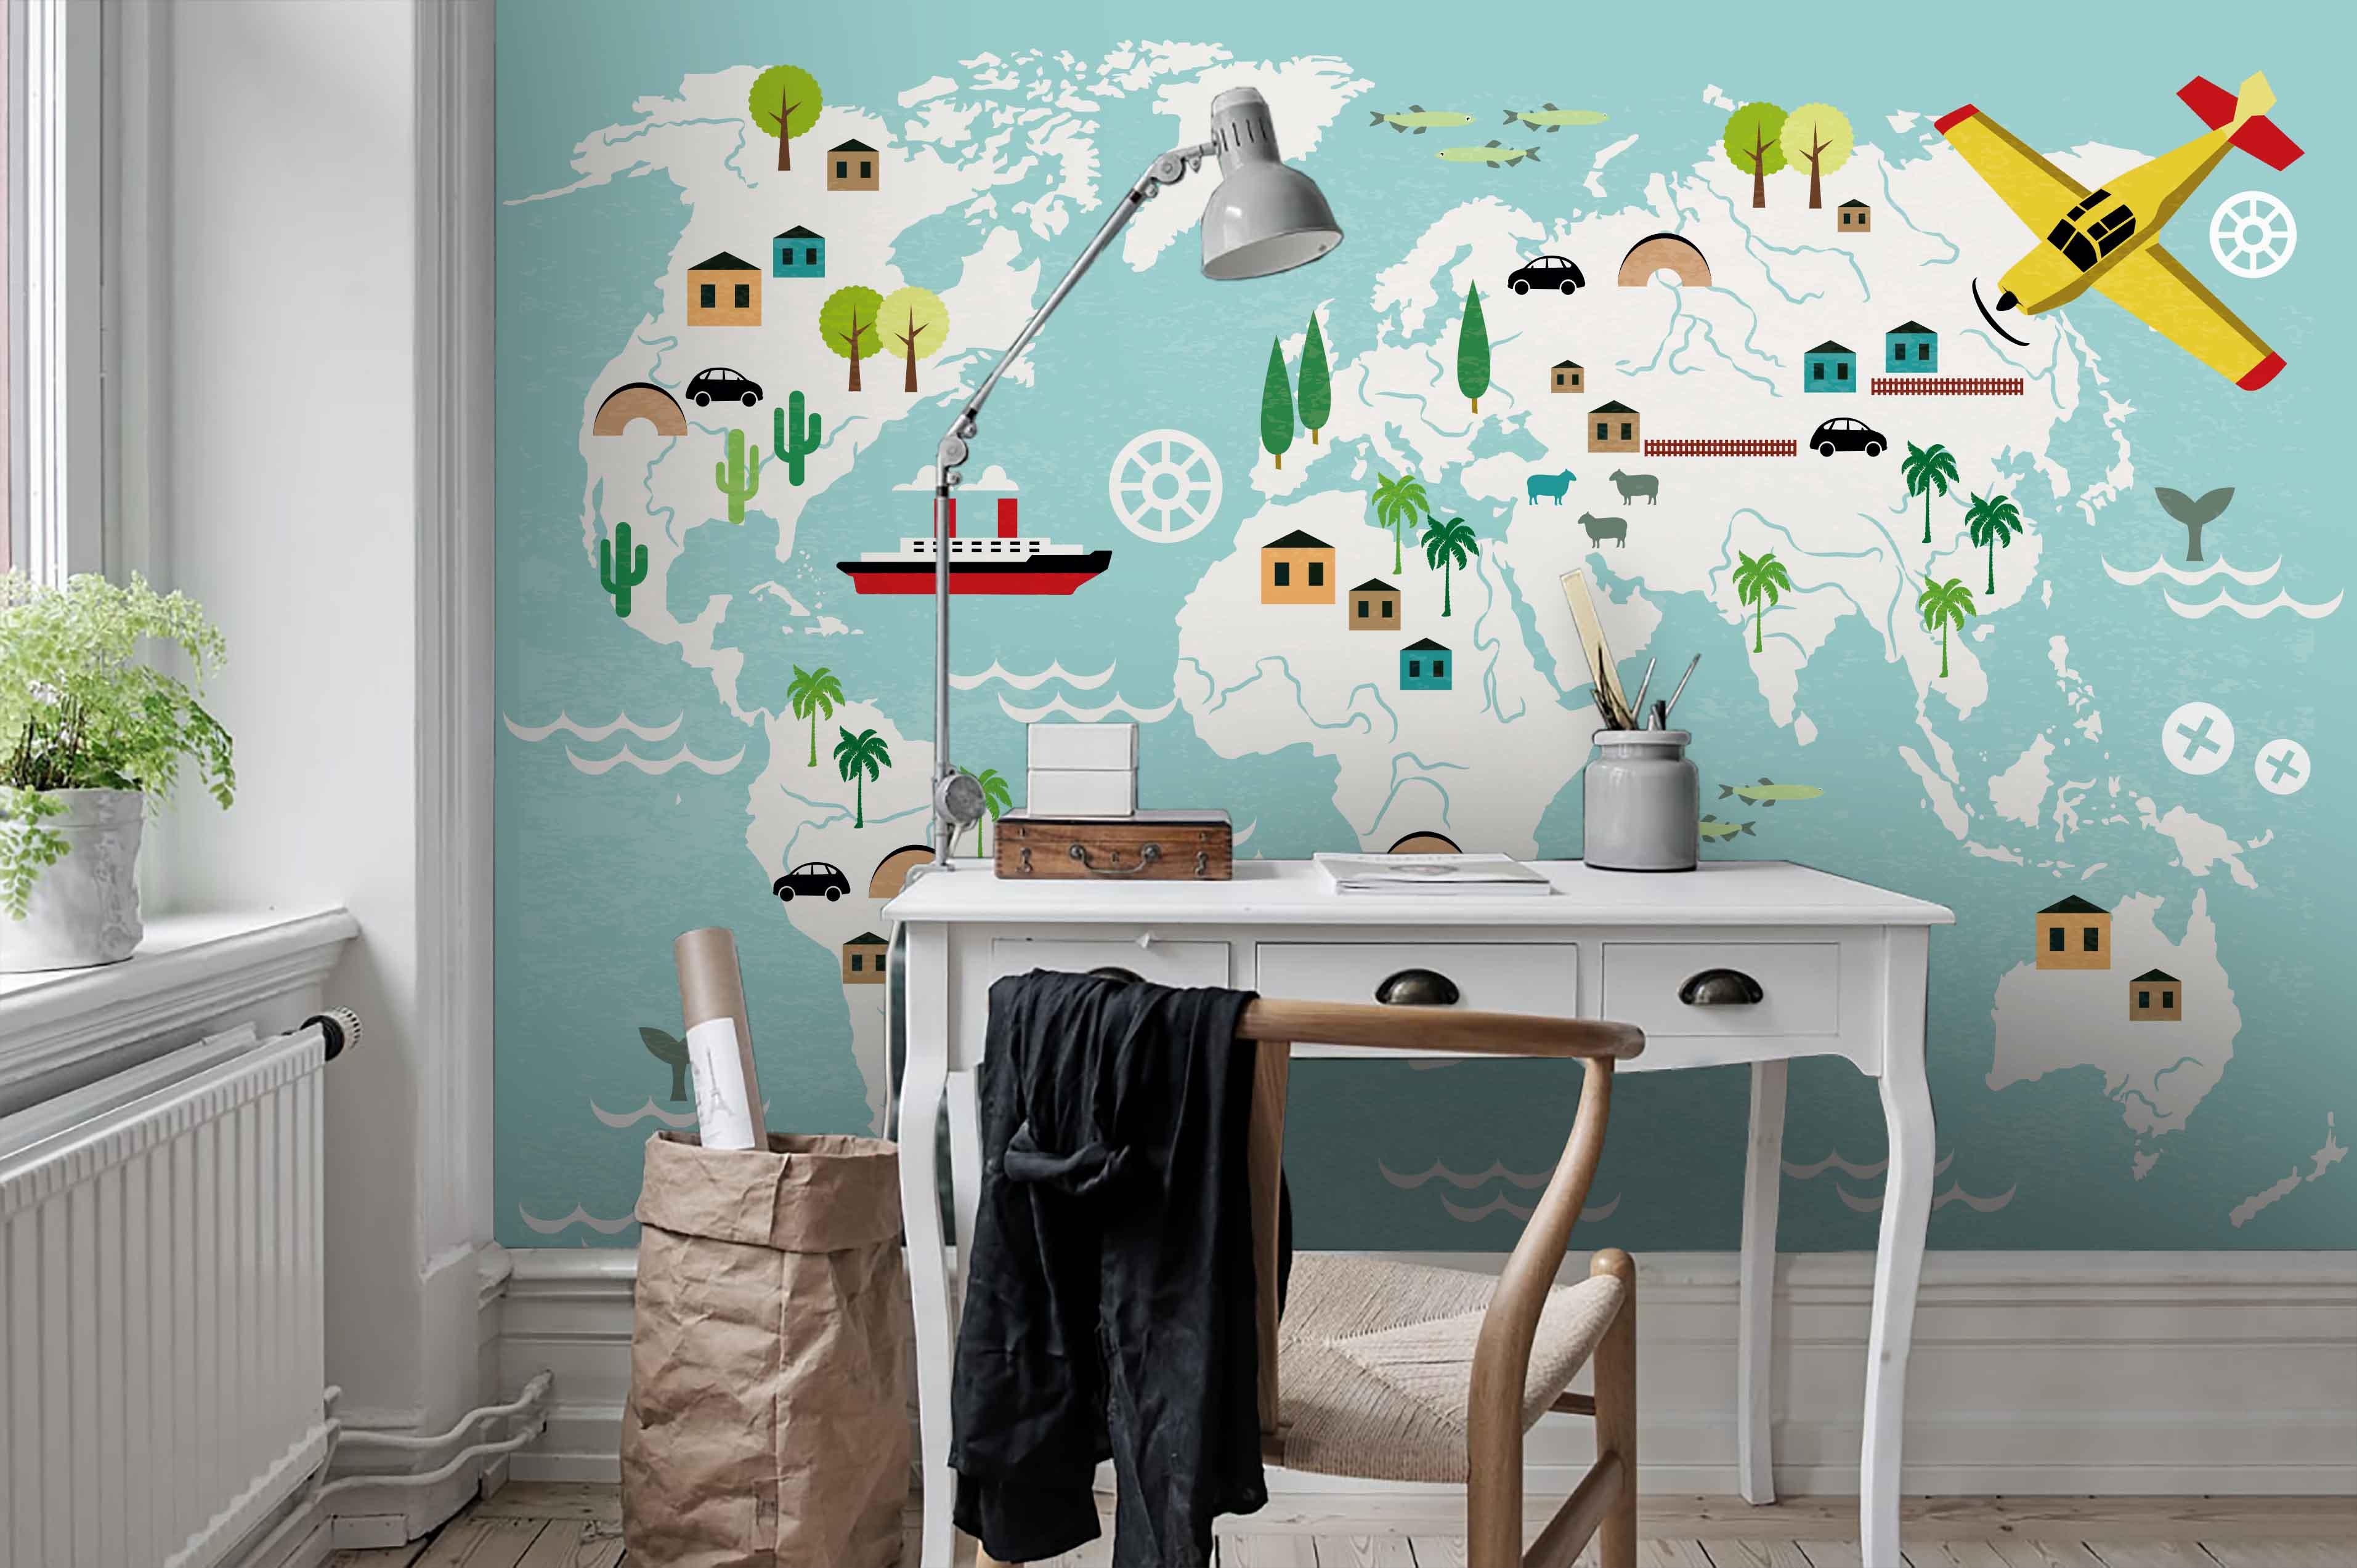 3D Cartoon Children's World Map Wall Mural Wallpaper 47- Jess Art Decoration